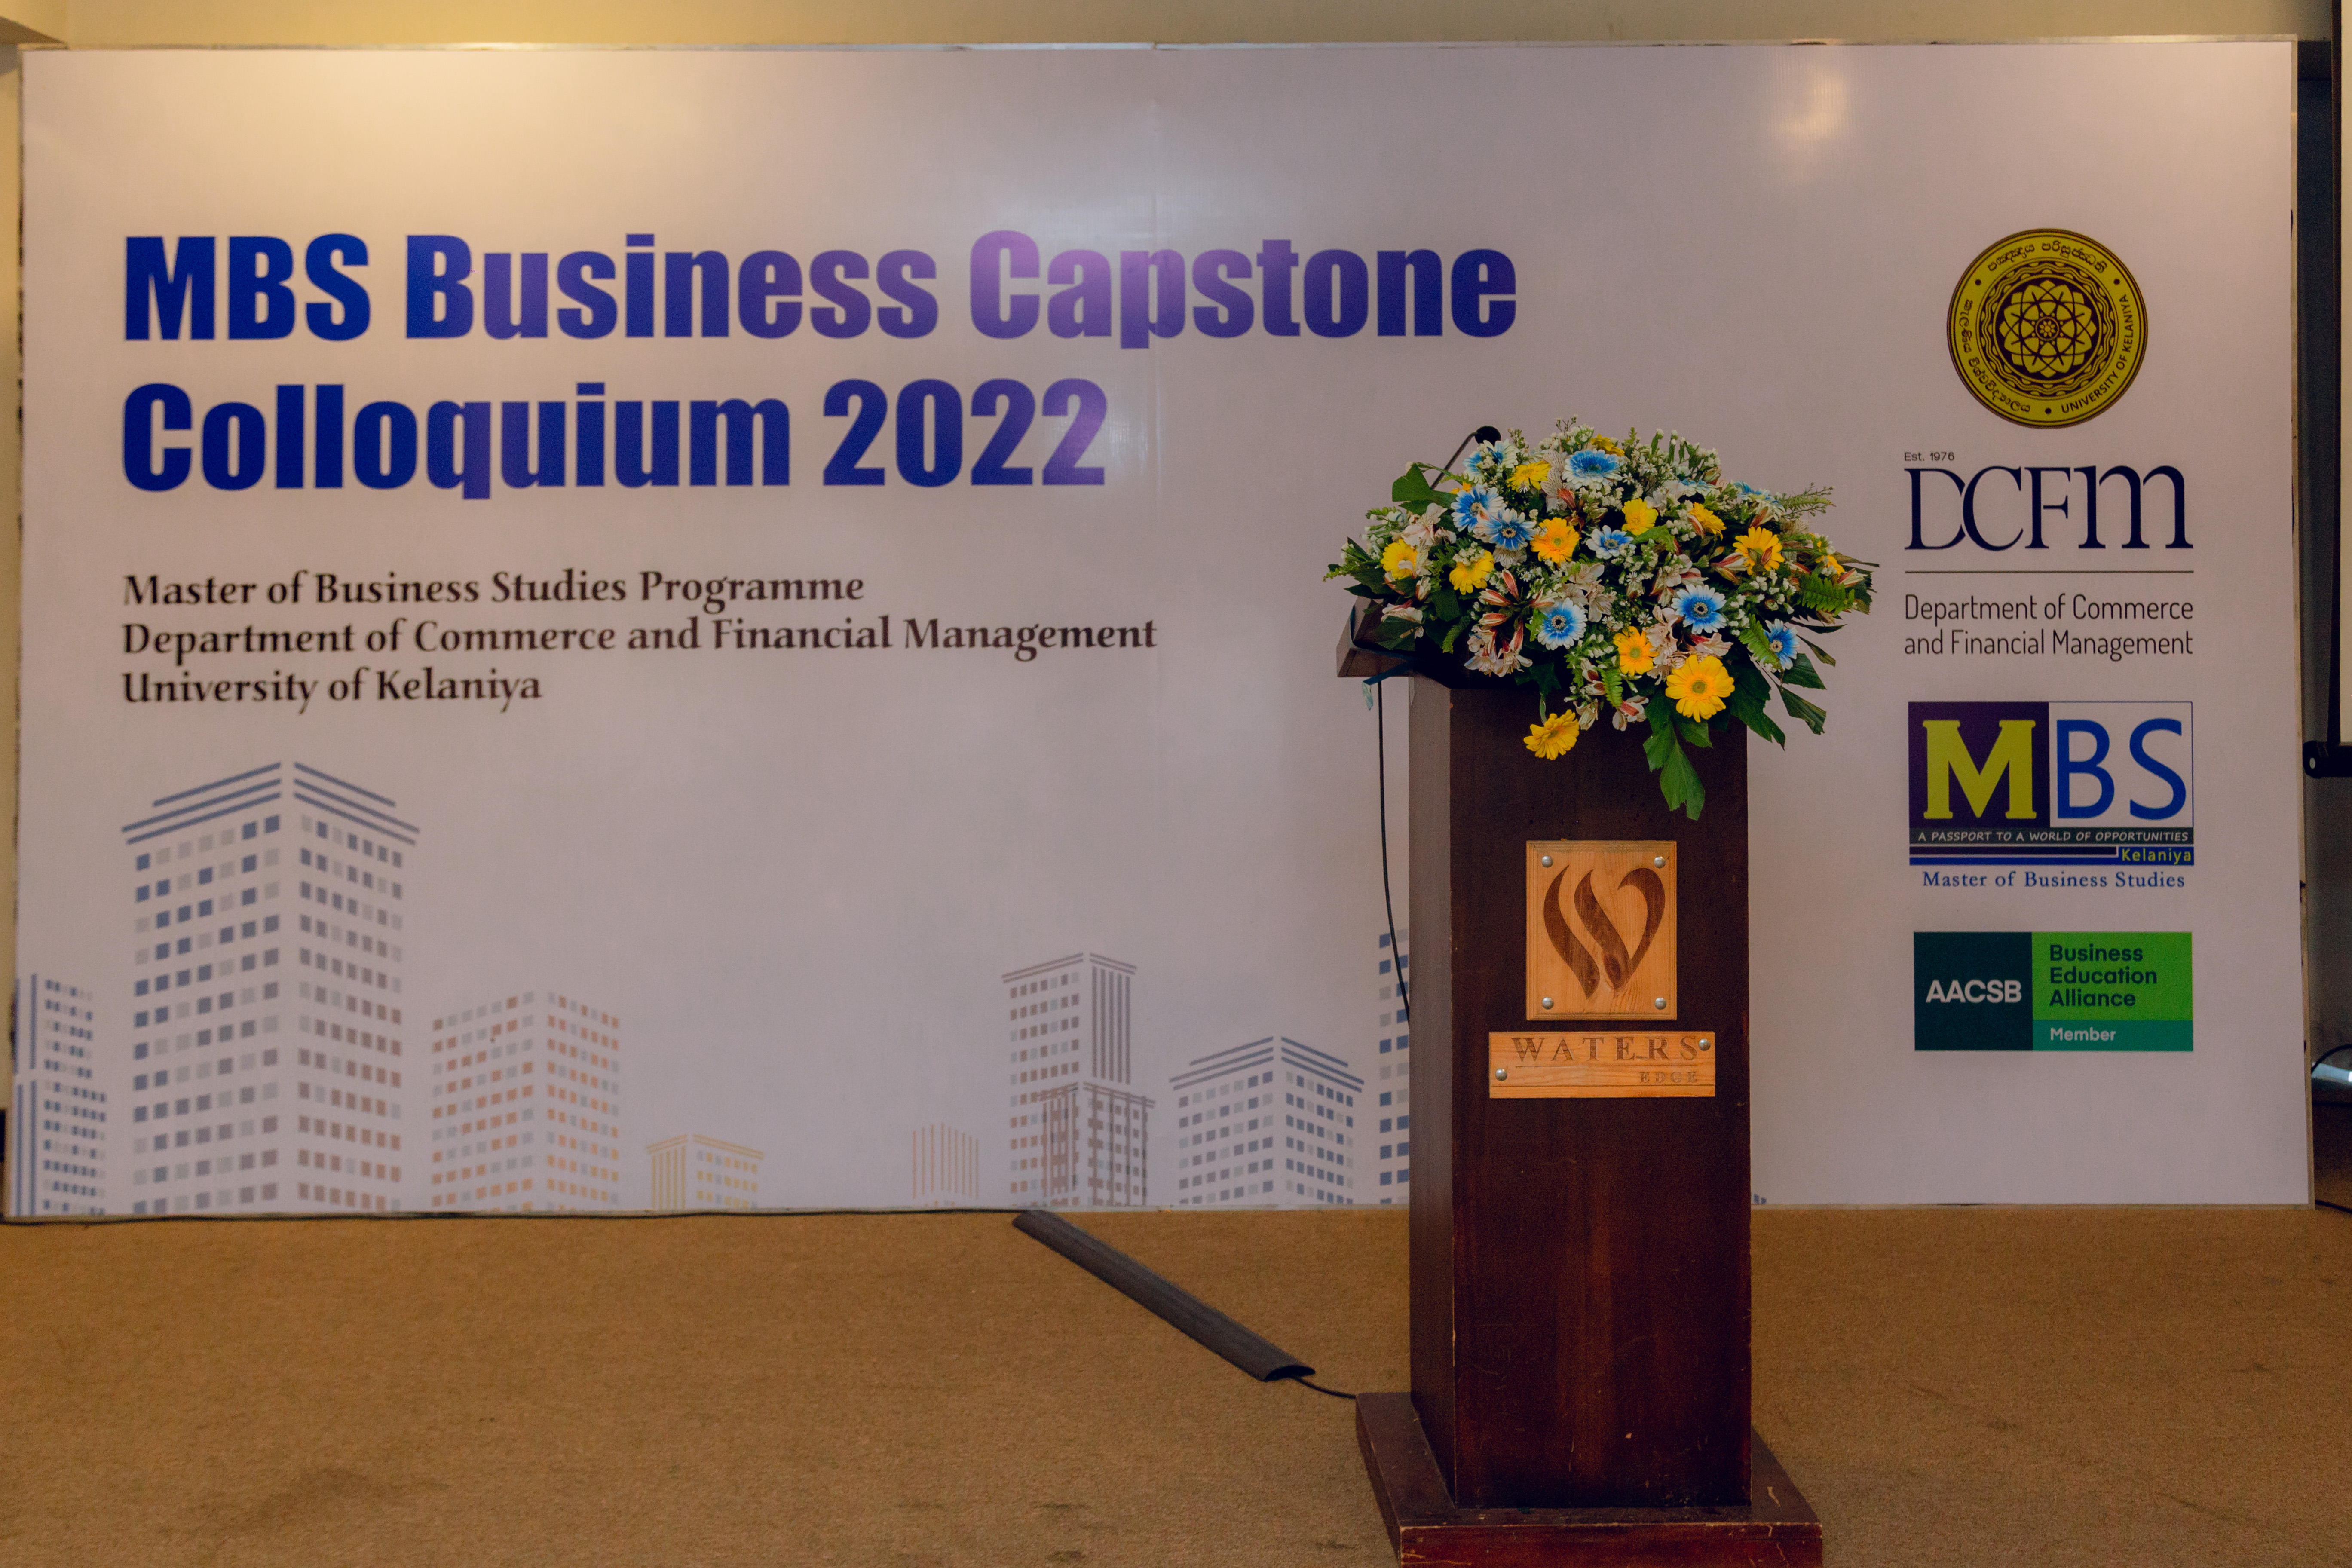 MBS Business Capstone Colloquium 2022